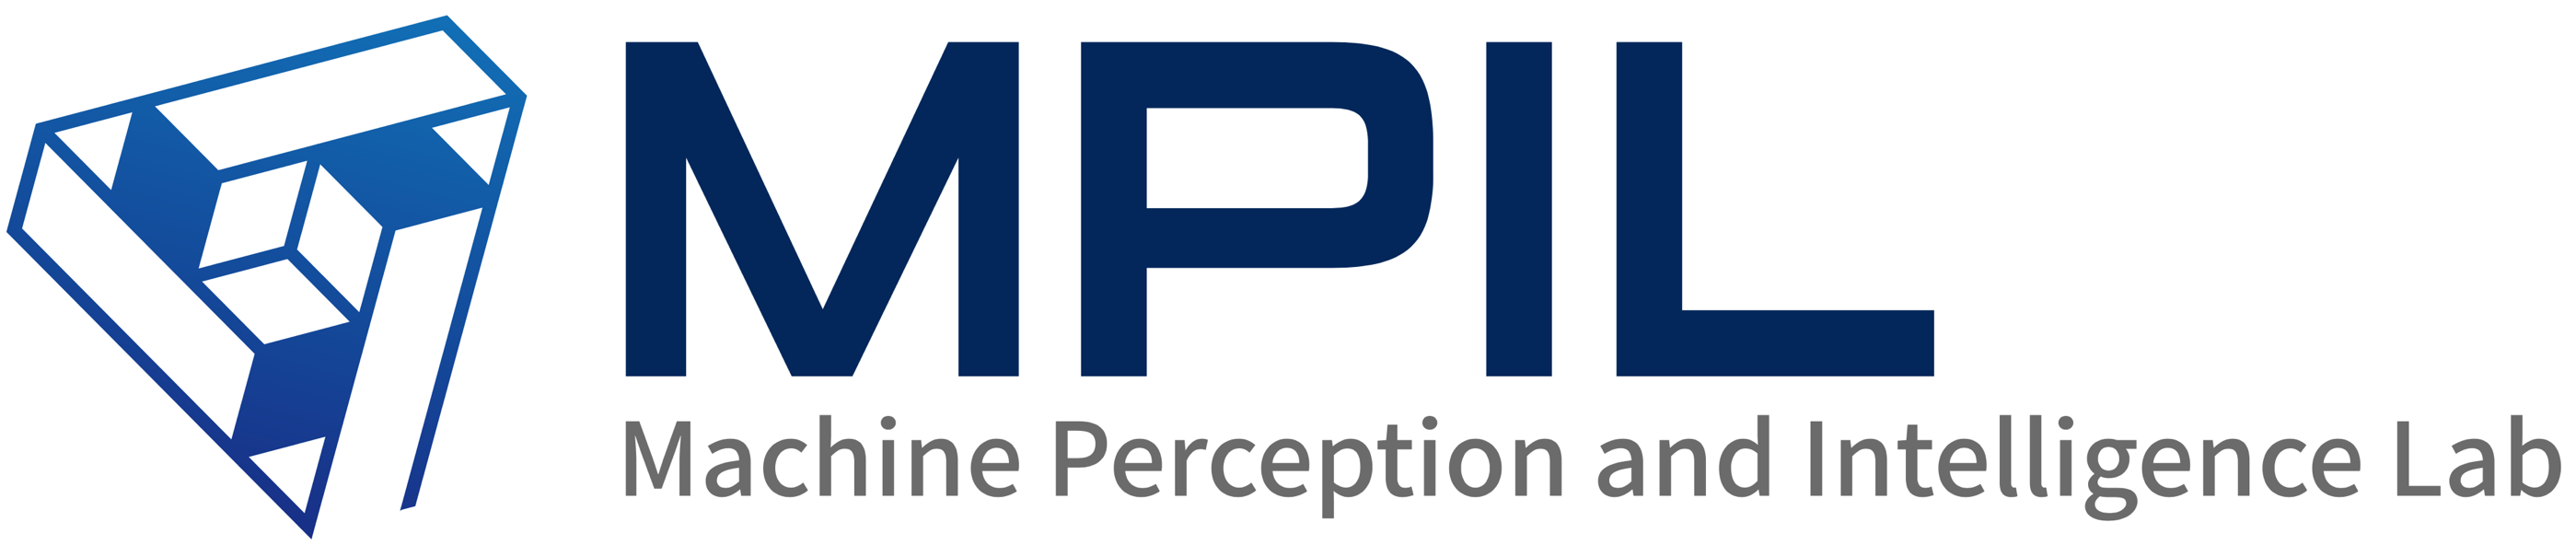 Machine Perception and Intelligence Lab (MPIL)